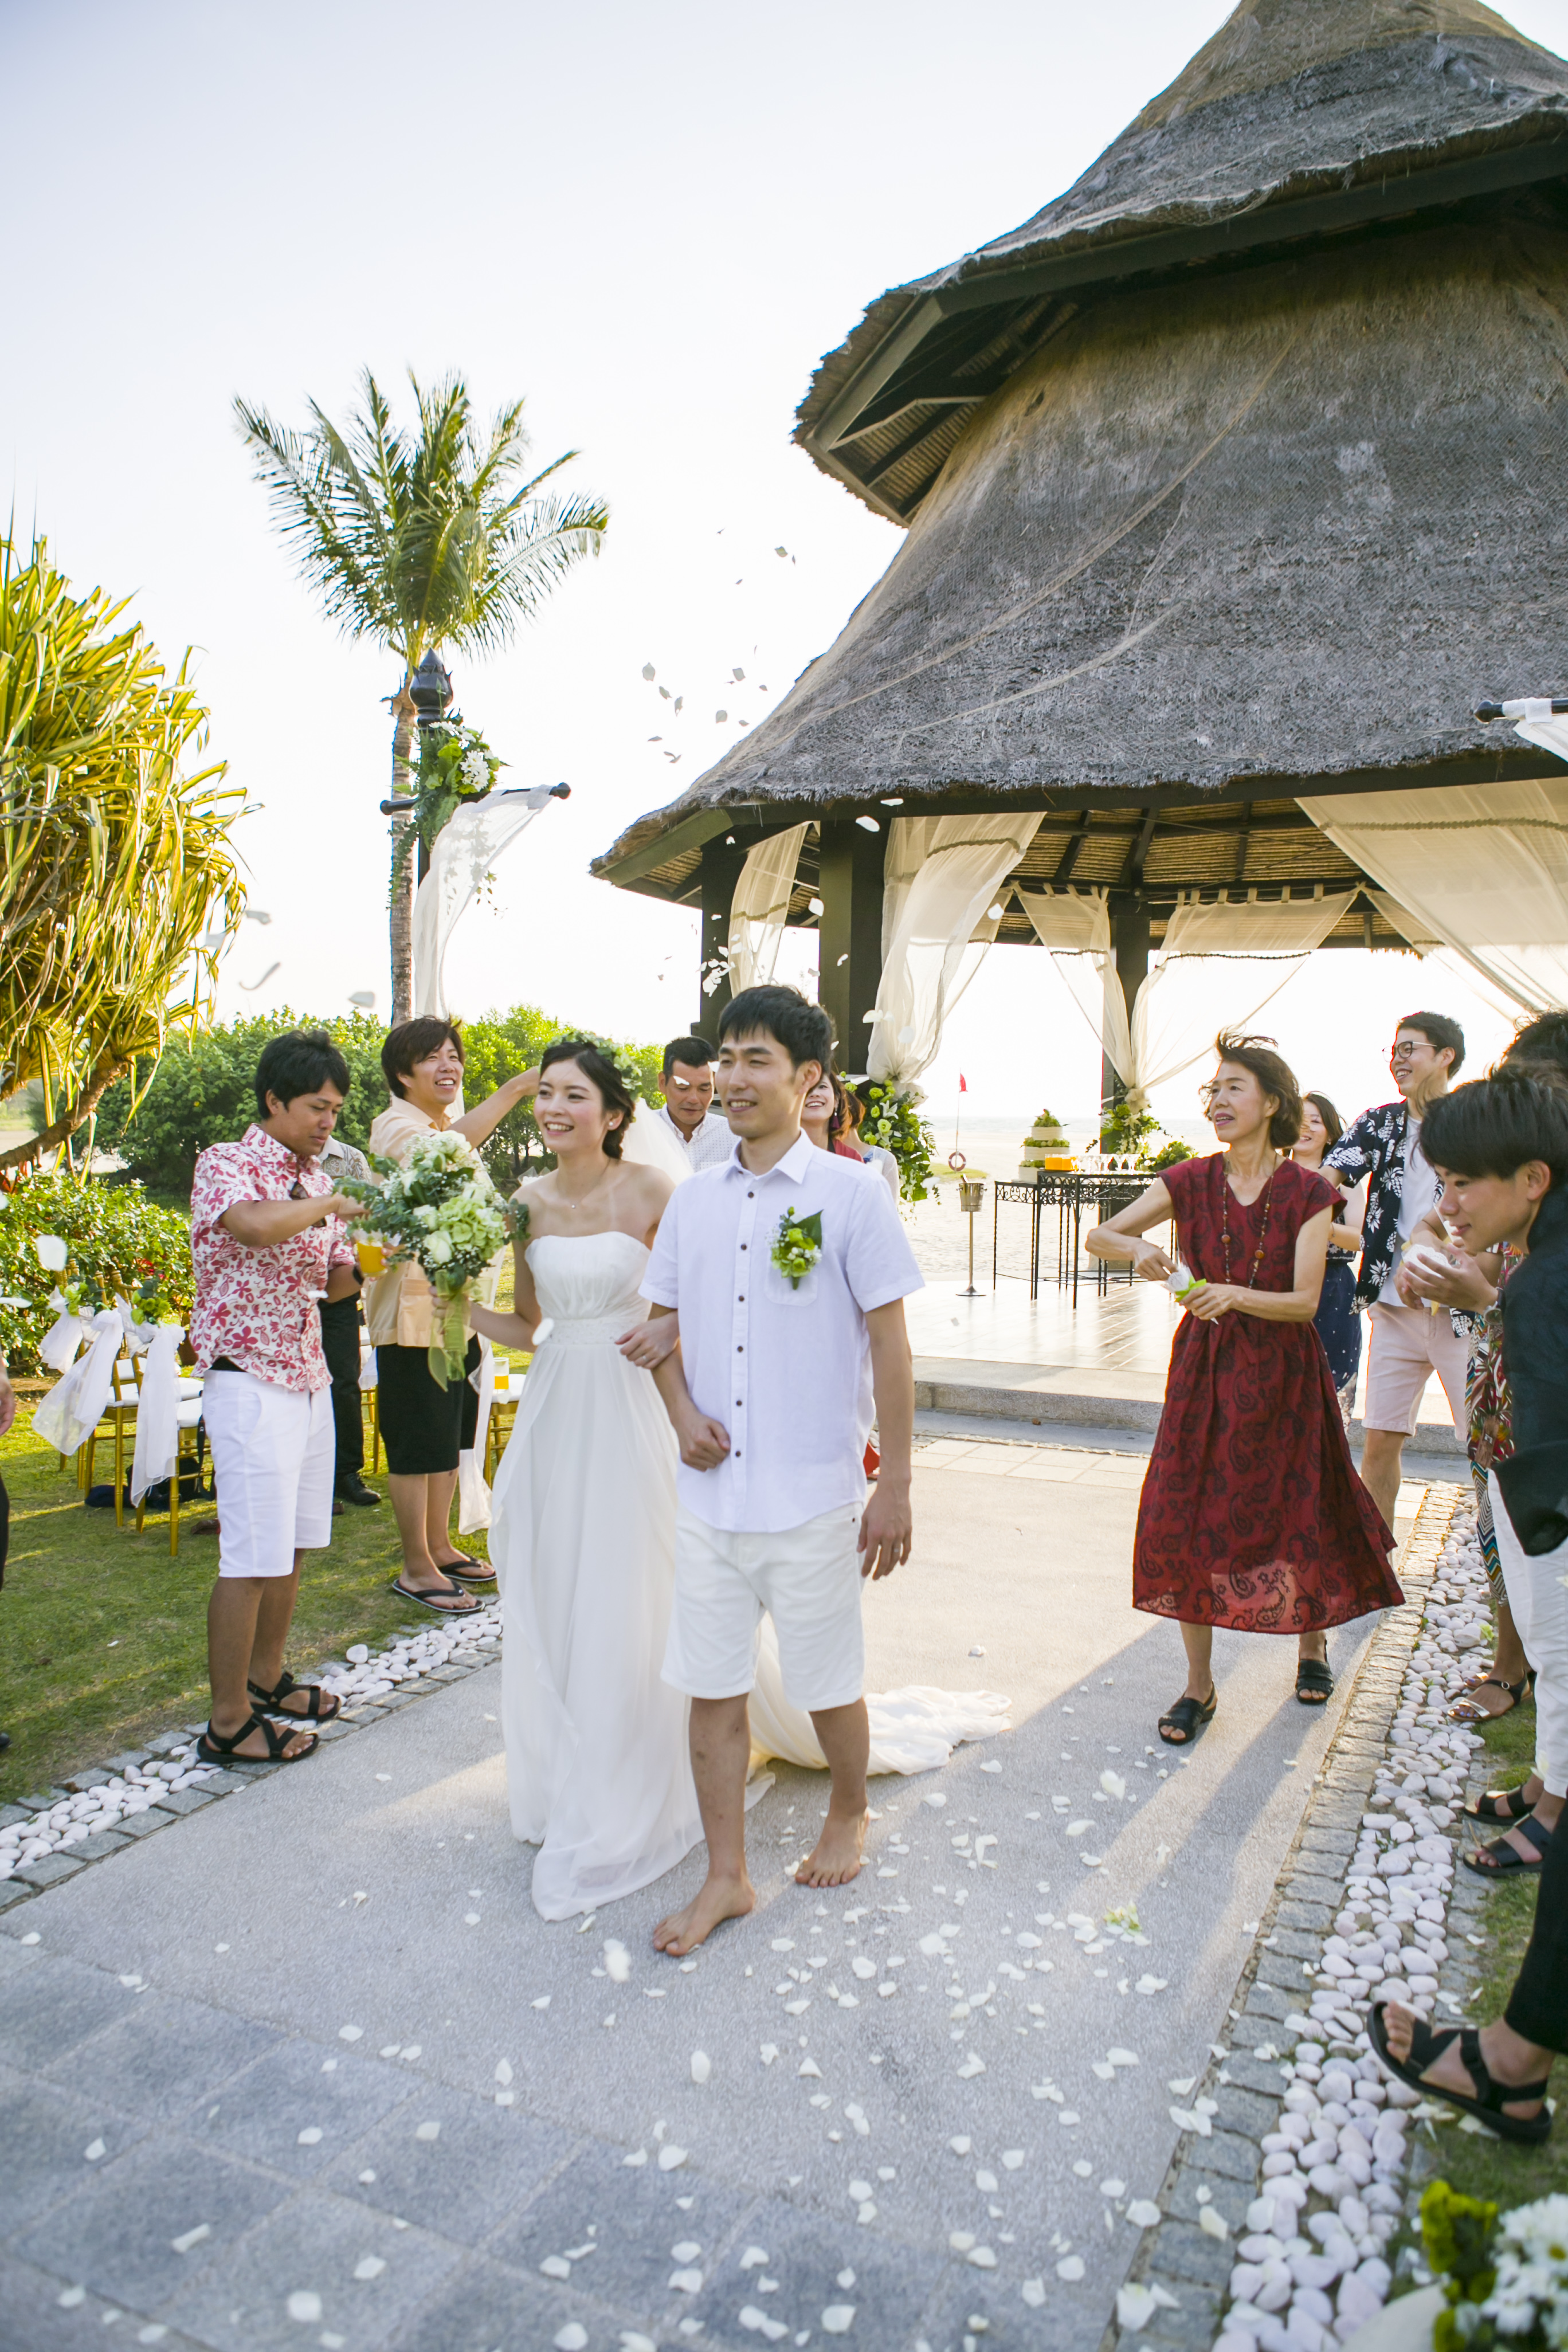 malaysiawedding, kotakinabalu,sabah, wedding, weddings, overseaswedding, syangri-La's rasaria resort, pavilionwedding, japanesewedding